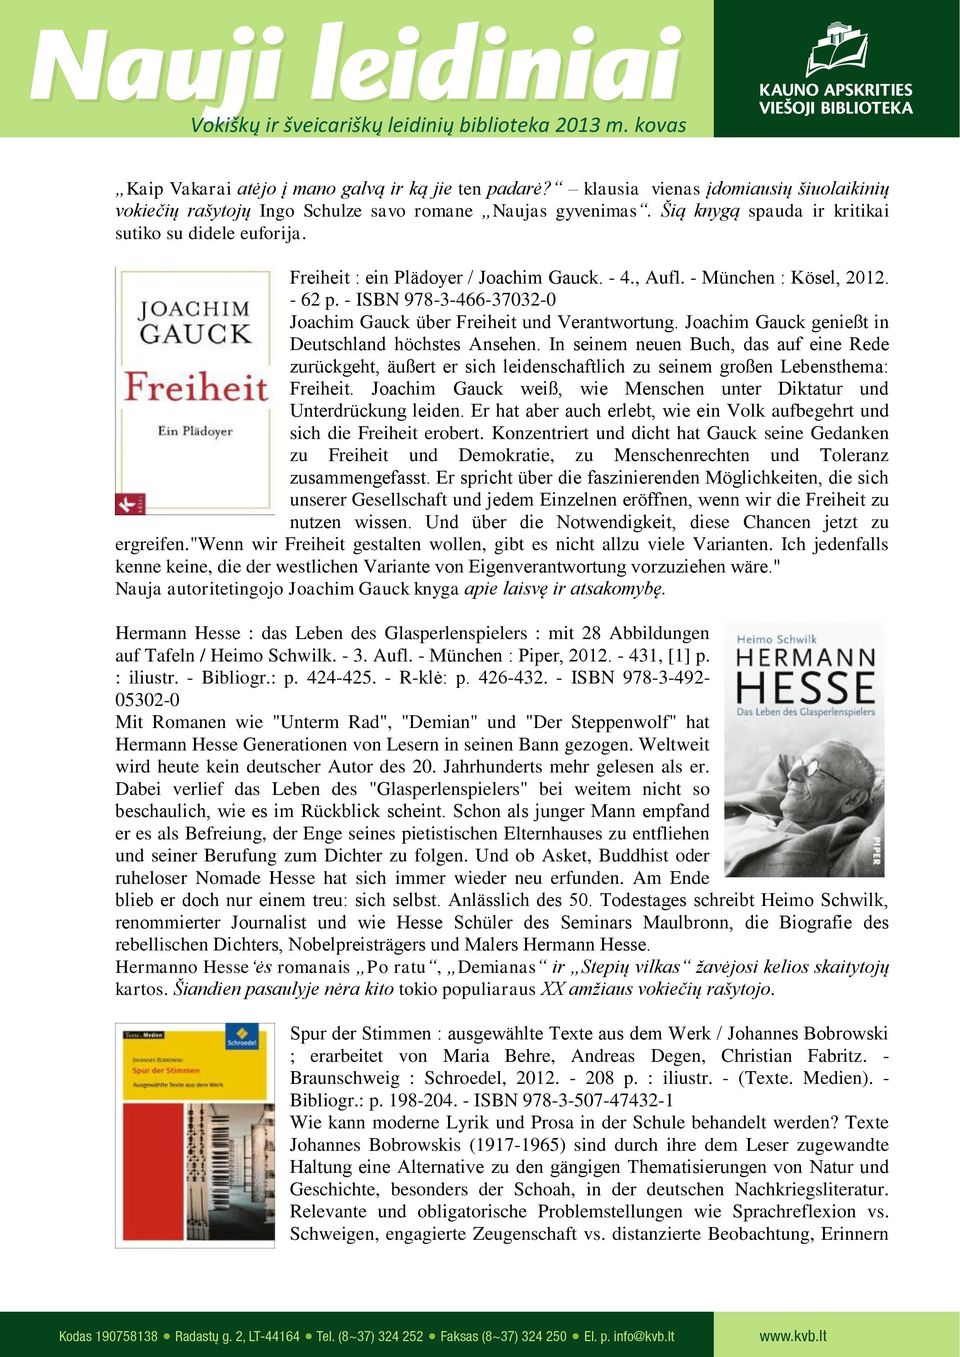 - ISBN 978-3-466-37032-0 Joachim Gauck über Freiheit und Verantwortung. Joachim Gauck genießt in Deutschland höchstes Ansehen.